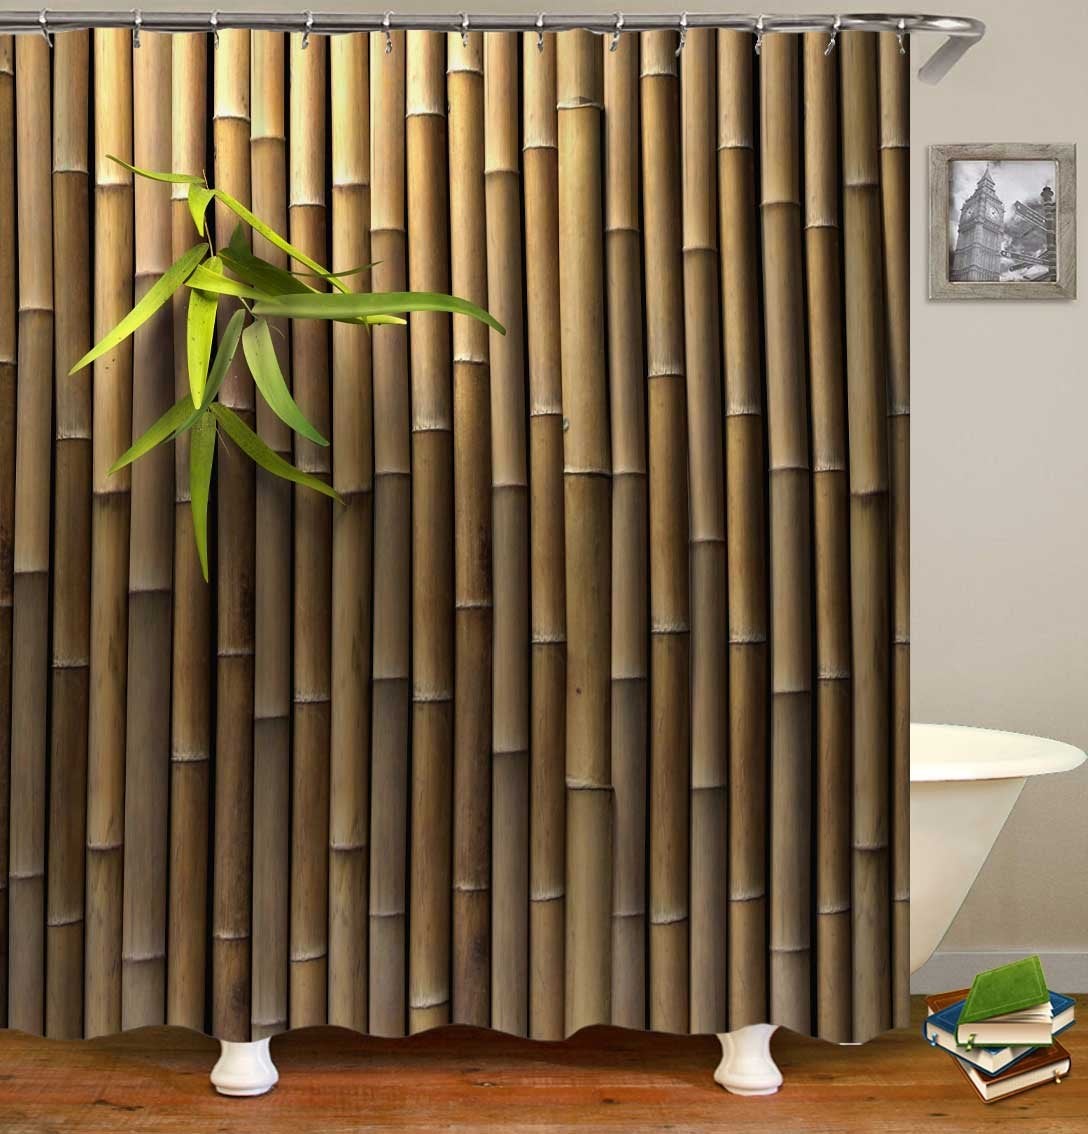 Bamboo Wall Shower Curtain